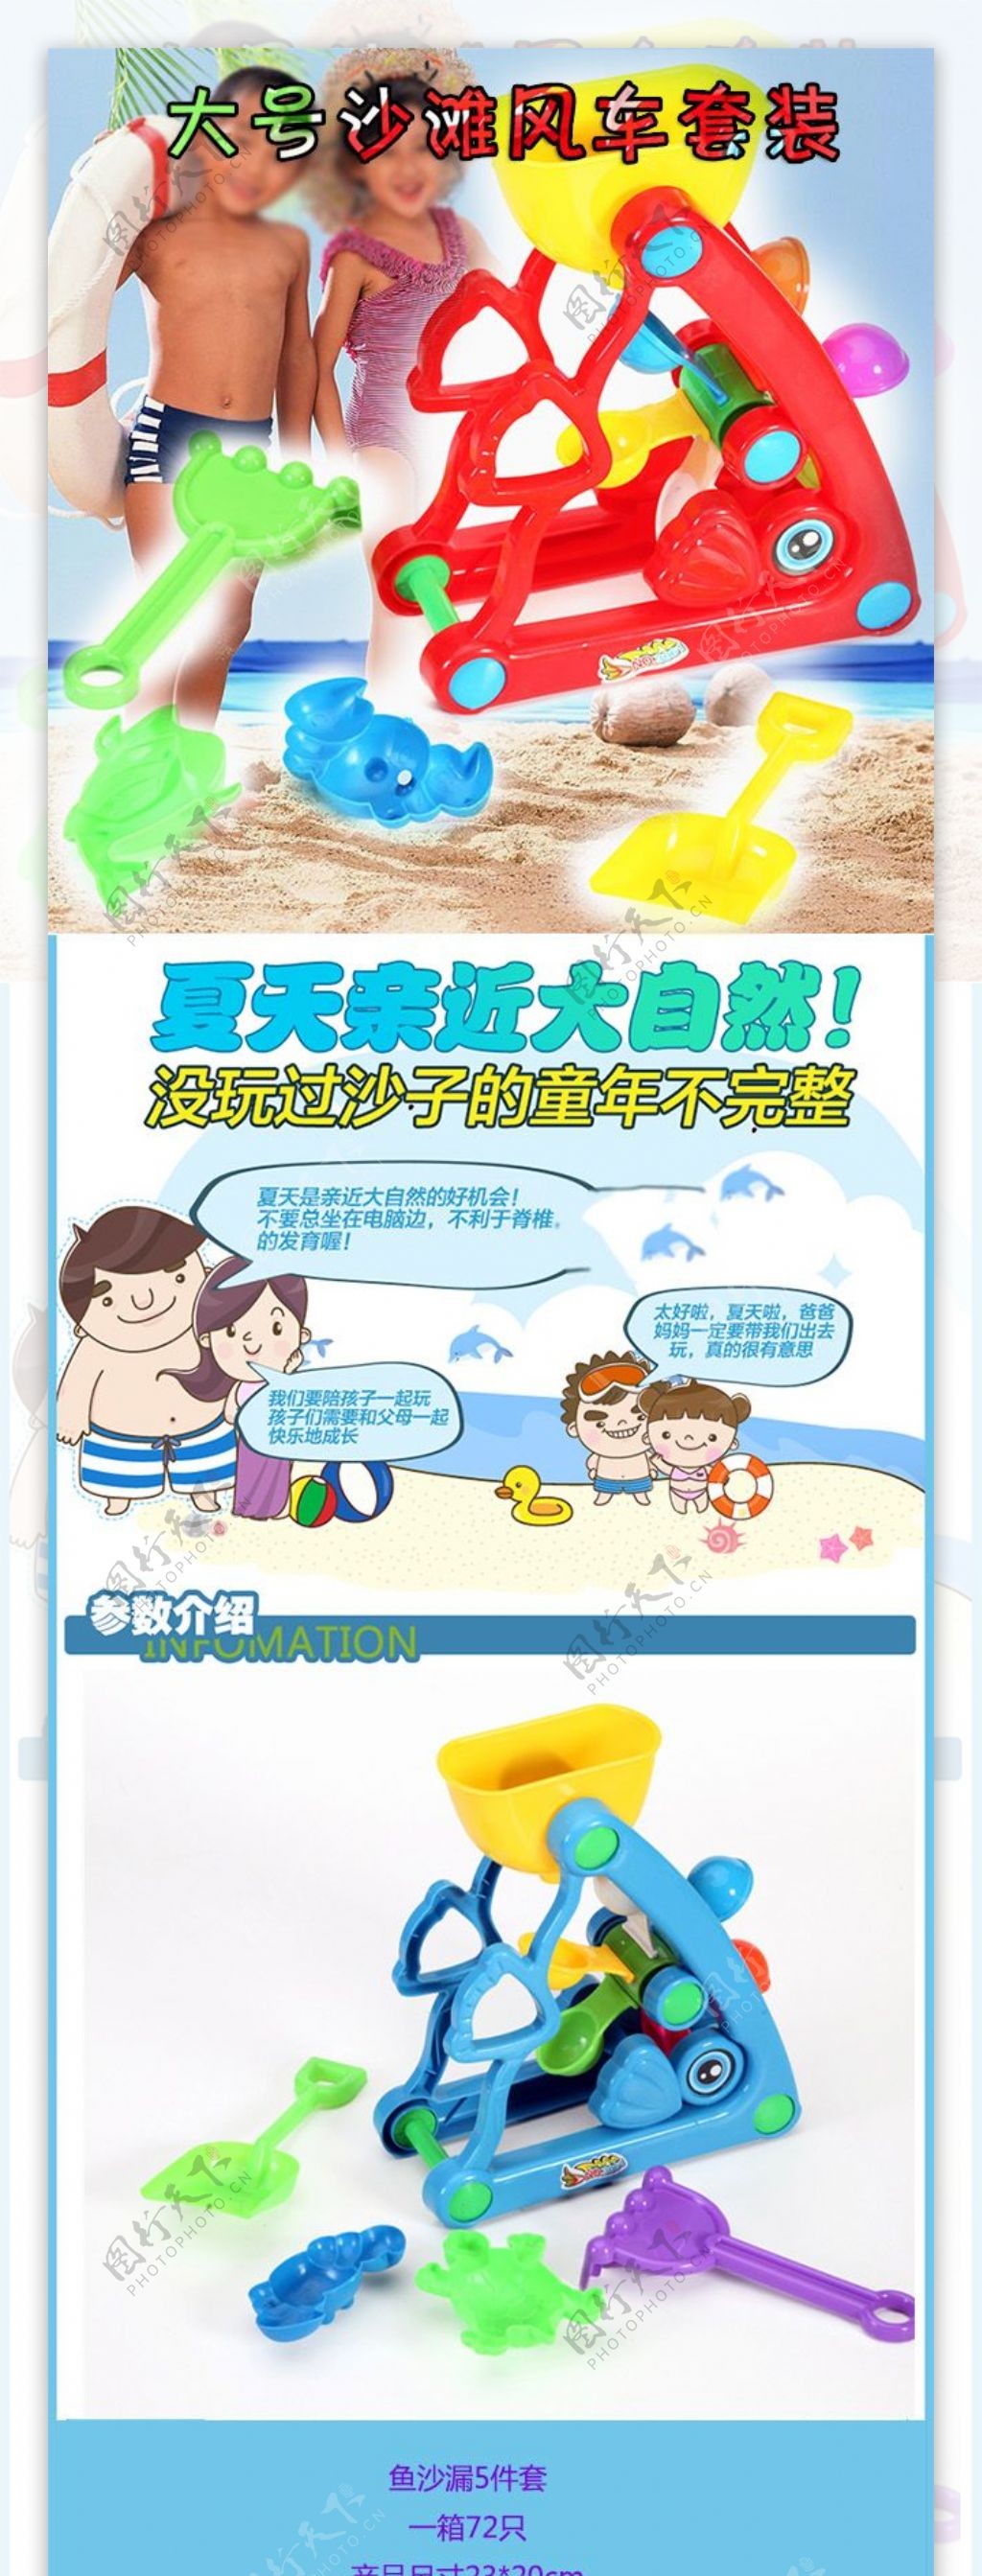 沙滩玩具详情页